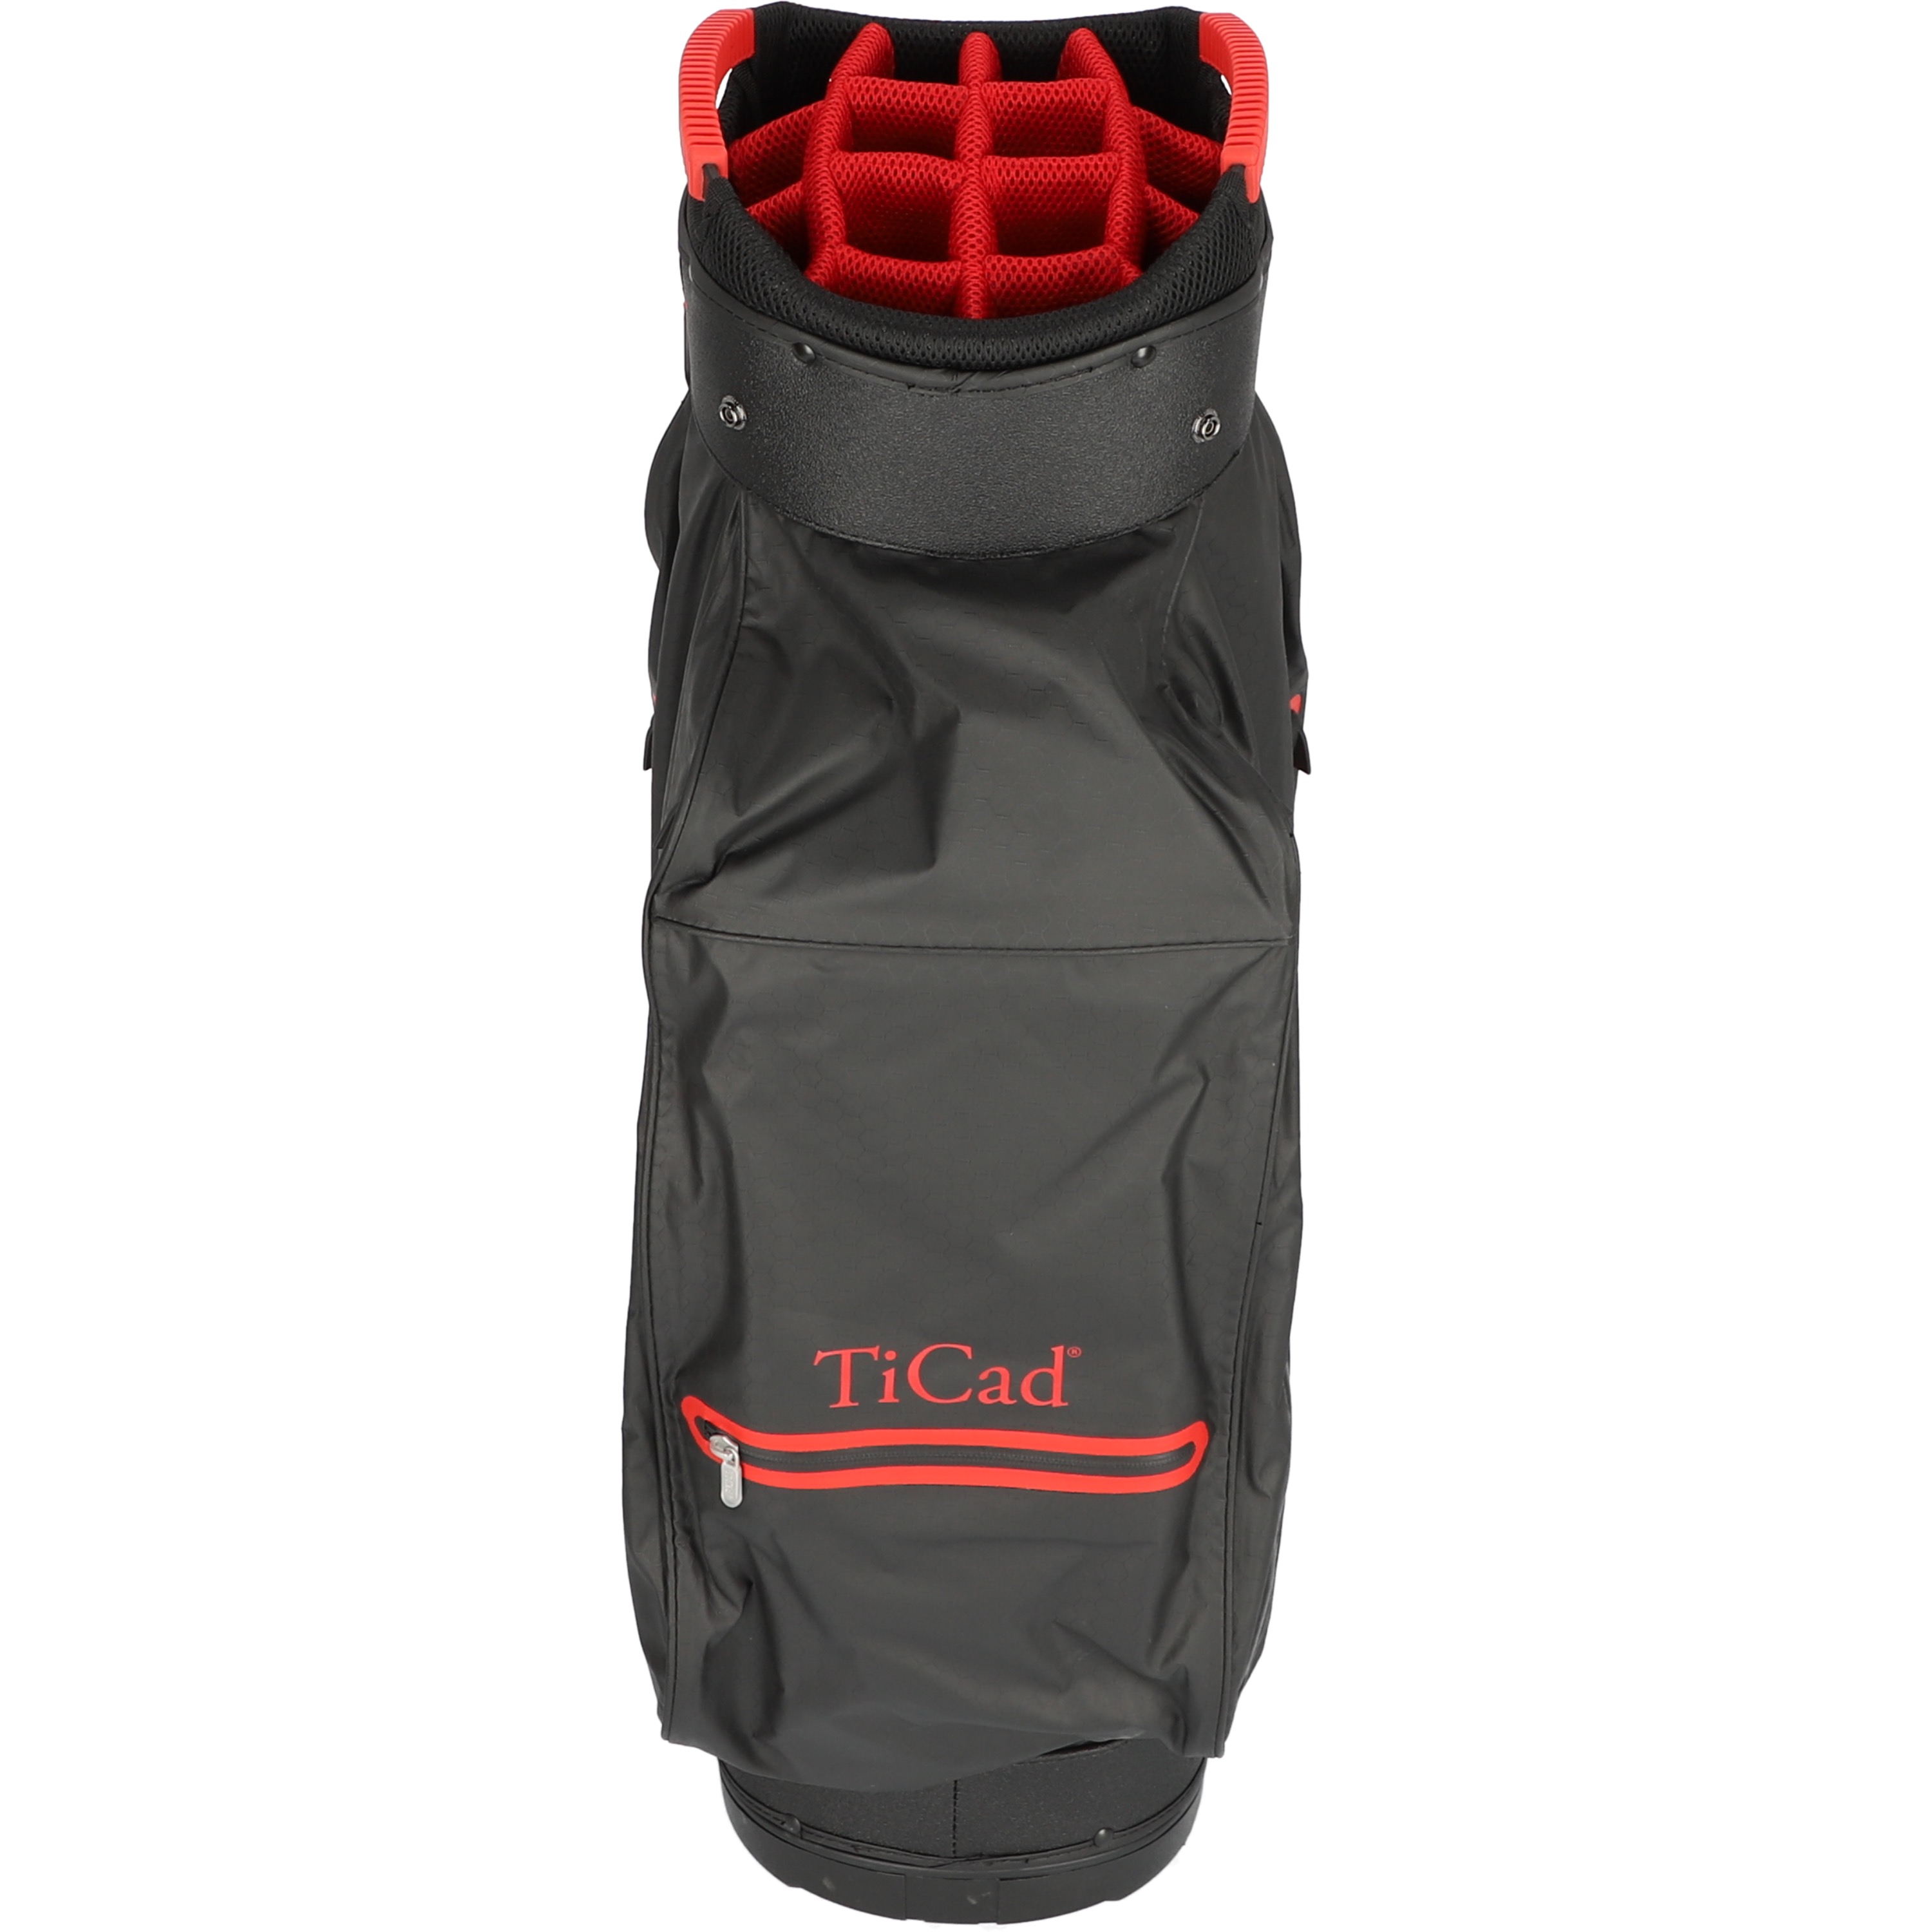 Ticad FO 14 Dry Black/Red Cartbag